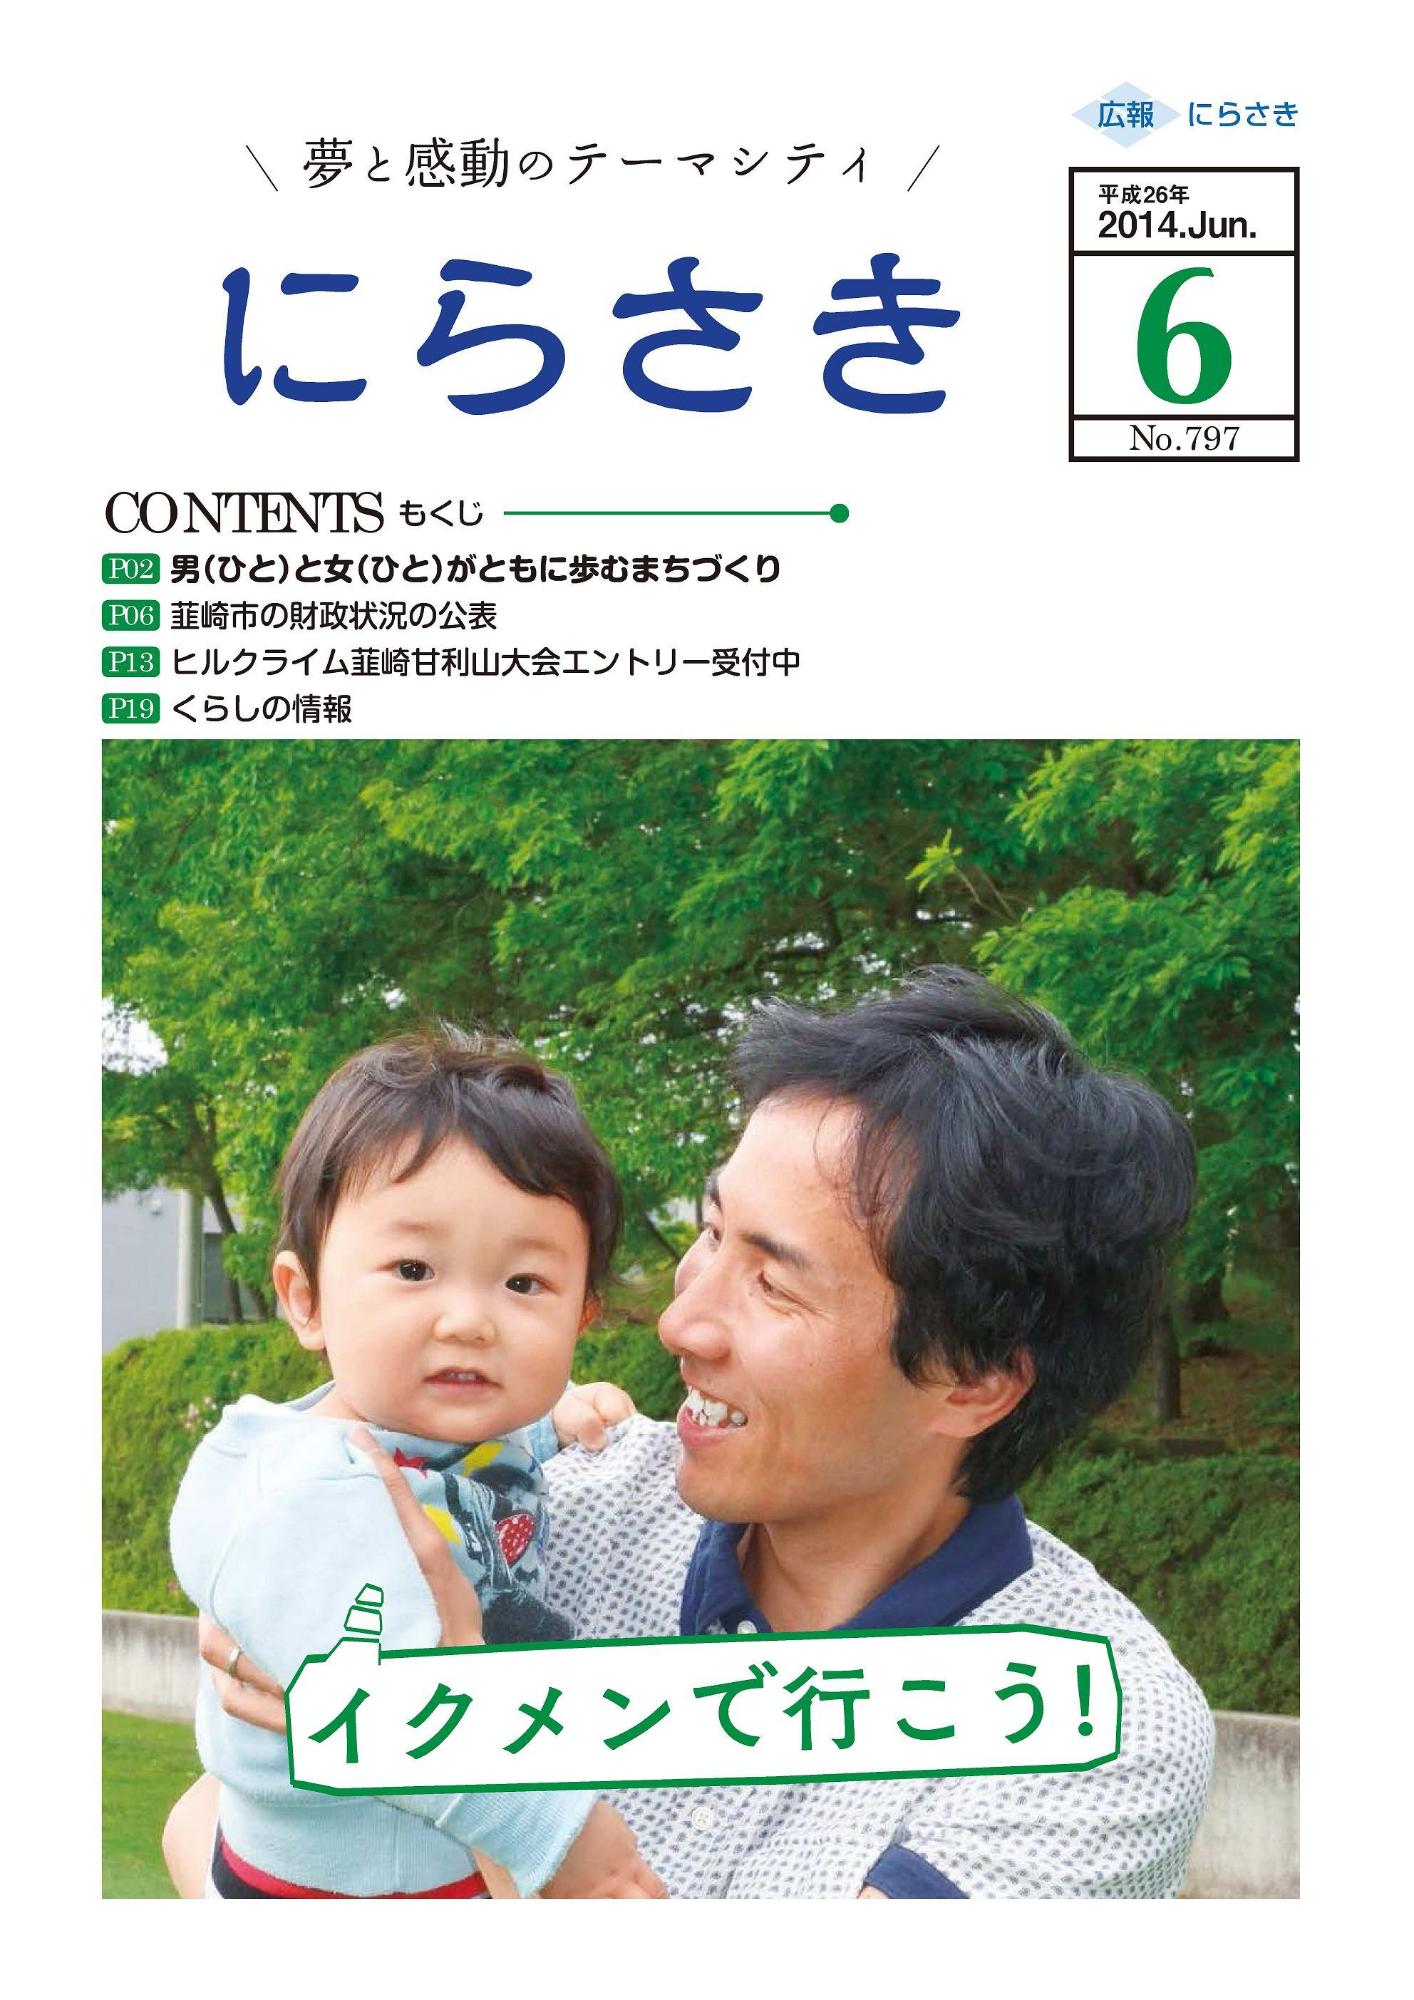 父親が赤ちゃんを抱っこして笑顔でほほ笑んでいる姿が写っていて、吹き出しでイクメンで行こう！と書かれている広報にらさき6月号表紙